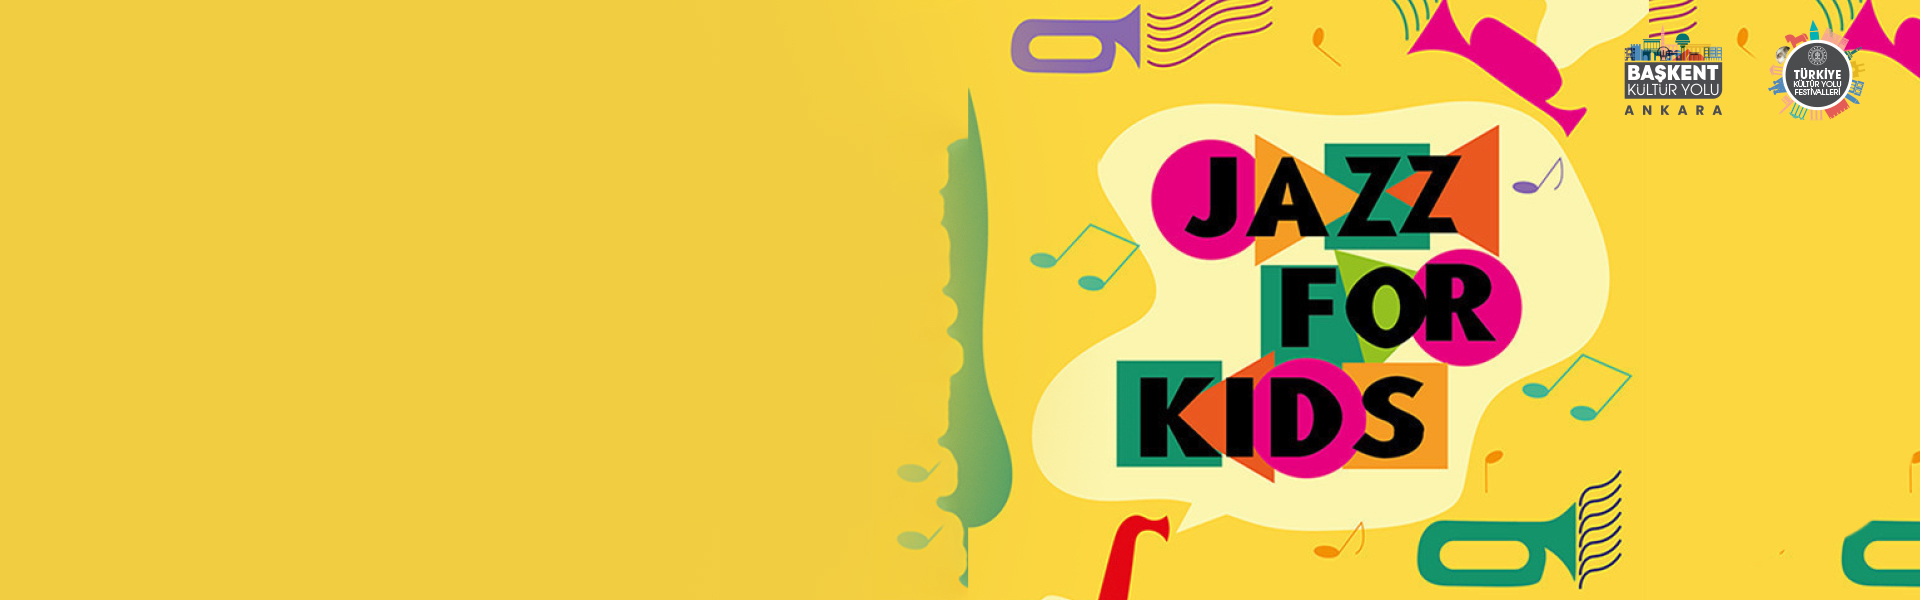 Başkent Kültür Yolu Festivali - Jazz For Kids